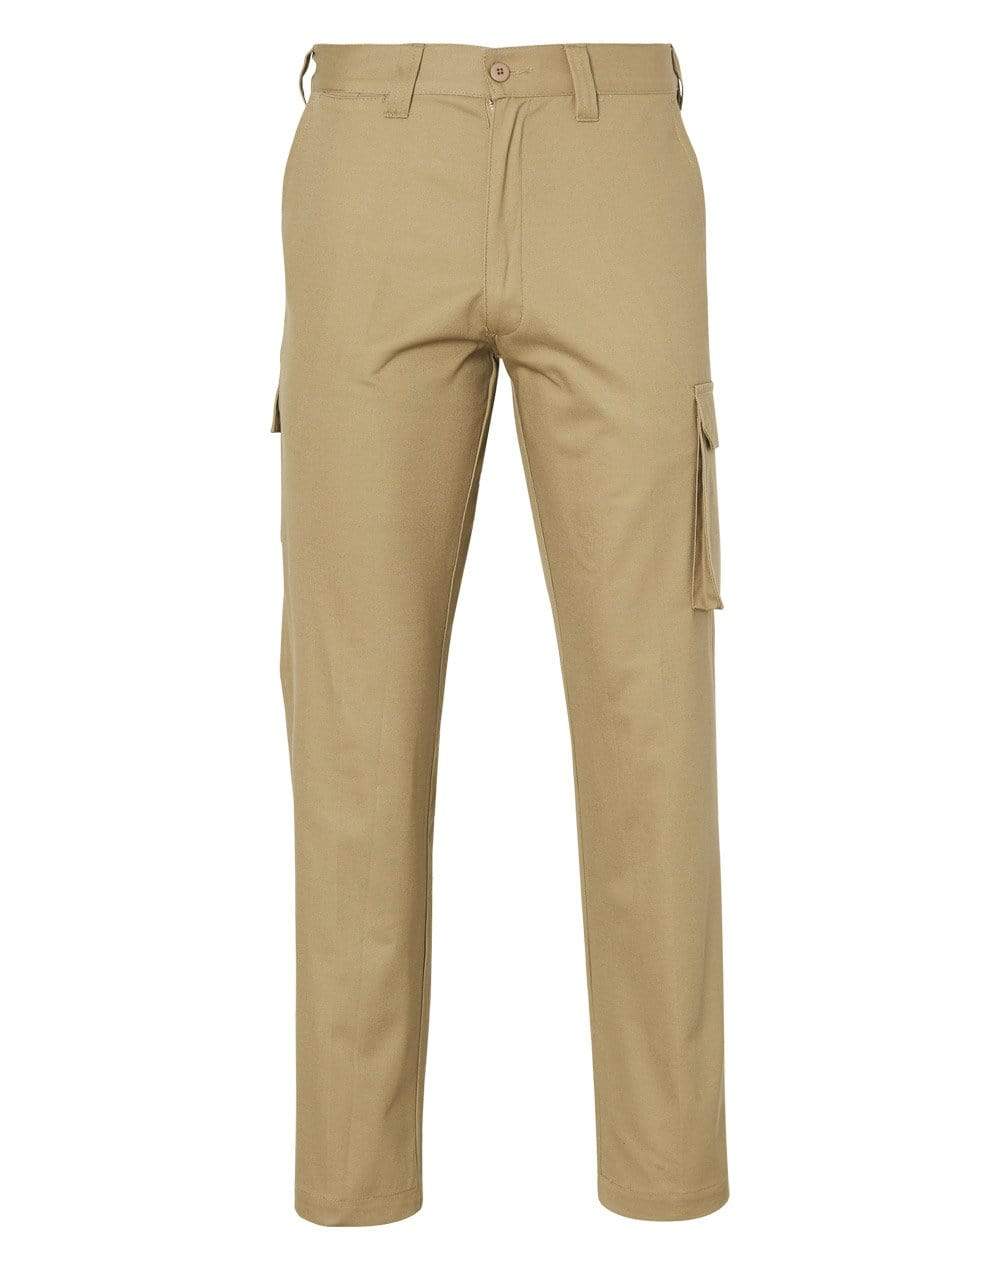 Australian Industrial Wear Work Wear Khaki / 77R Men'sHEAVY COTTON PRE-SHRUNK DRILL PANTS Regular Size WP07